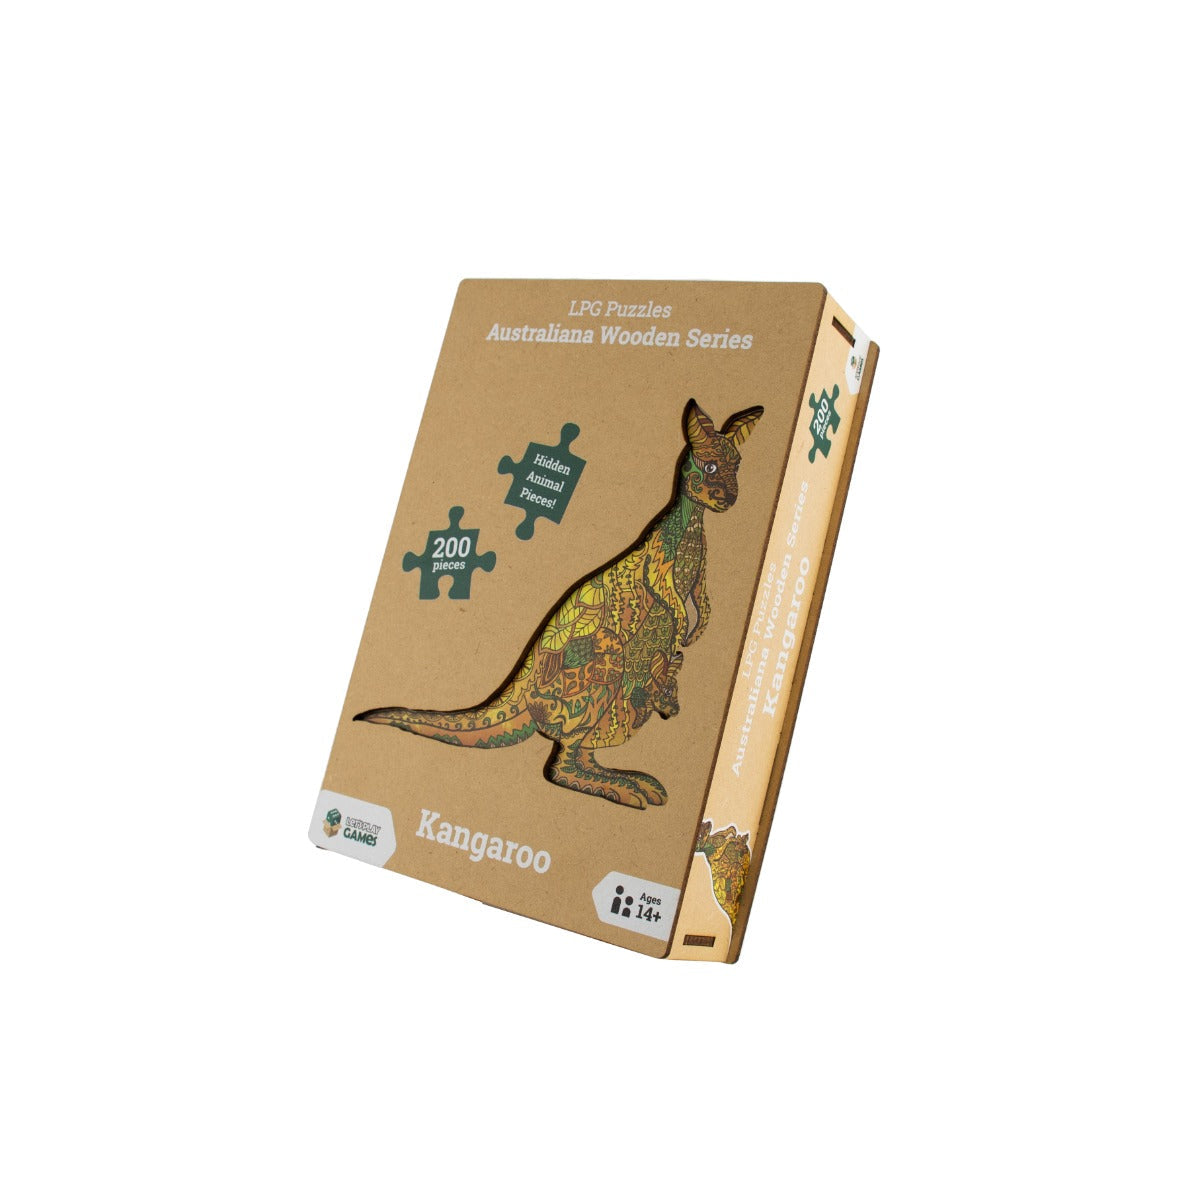 Kangaroo - LPG Wooden Puzzle Australiana Series 01